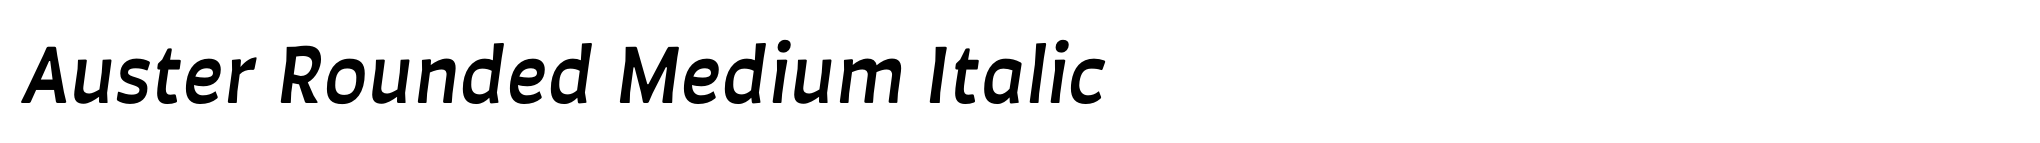 Auster Rounded Medium Italic image